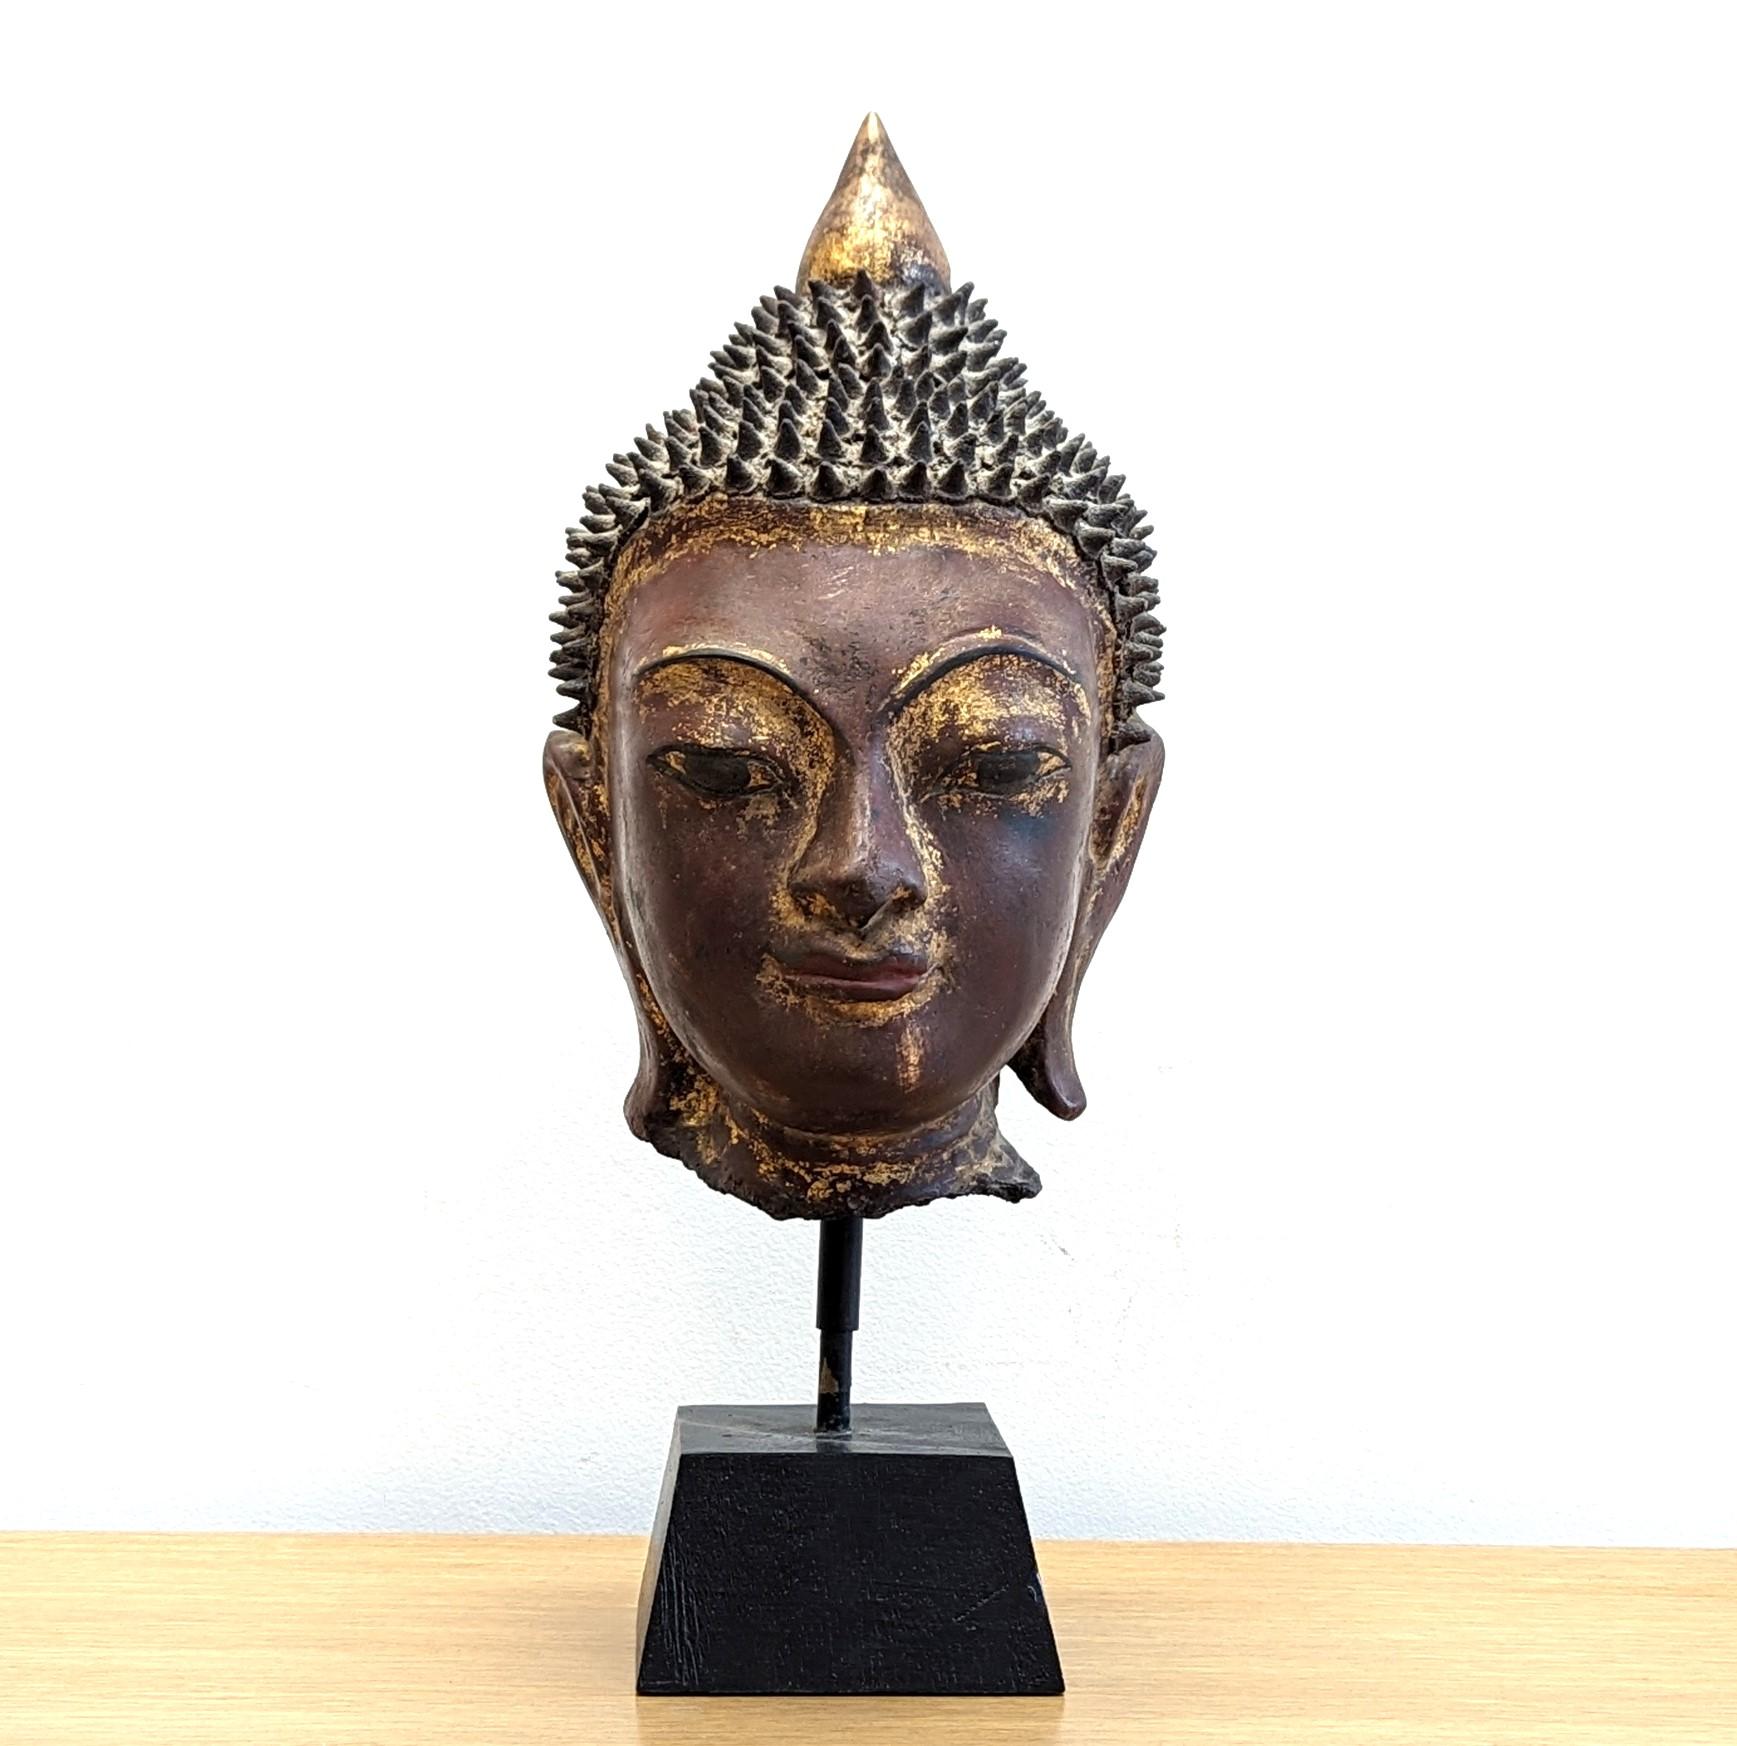 Birmesische Buddha-Skulptur.  Ein Trockenlack-Buddha-Kopf, spätes 19. frühes 20. Jahrhundert, Shan-Periode 1315 - 1948, aus Holz, Holzasche, Thayo, Trockenlack mit Vergoldung auf Holzblock gesetzt.  Serene wunderbares Beispiel der birmanischen Shan